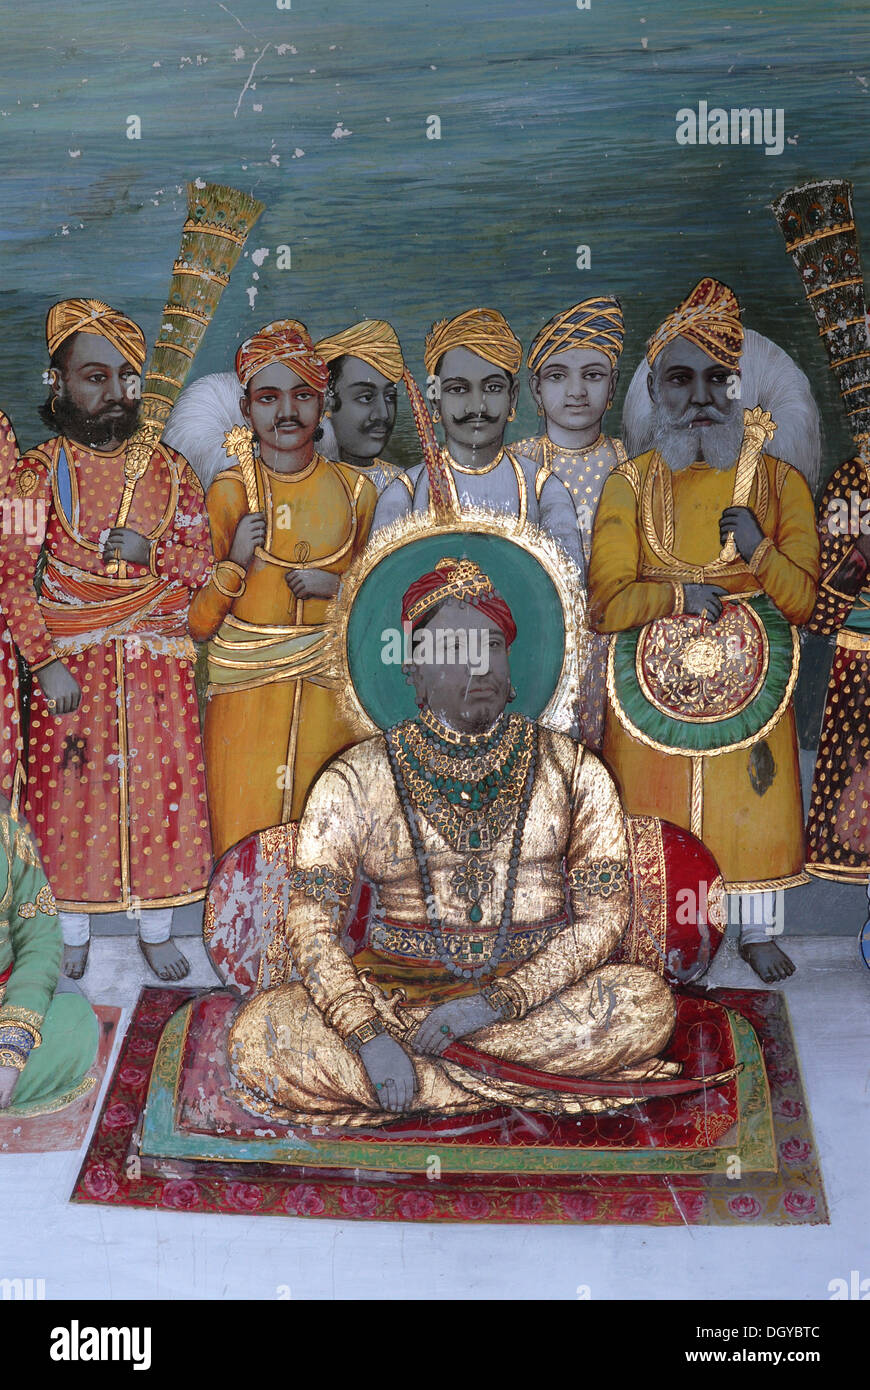 Maharaja of Dungarpur giving an audience with his entourage, Juna Mahal, ancient palace of Dungarpur, Rajasthan, India, Asia Stock Photo